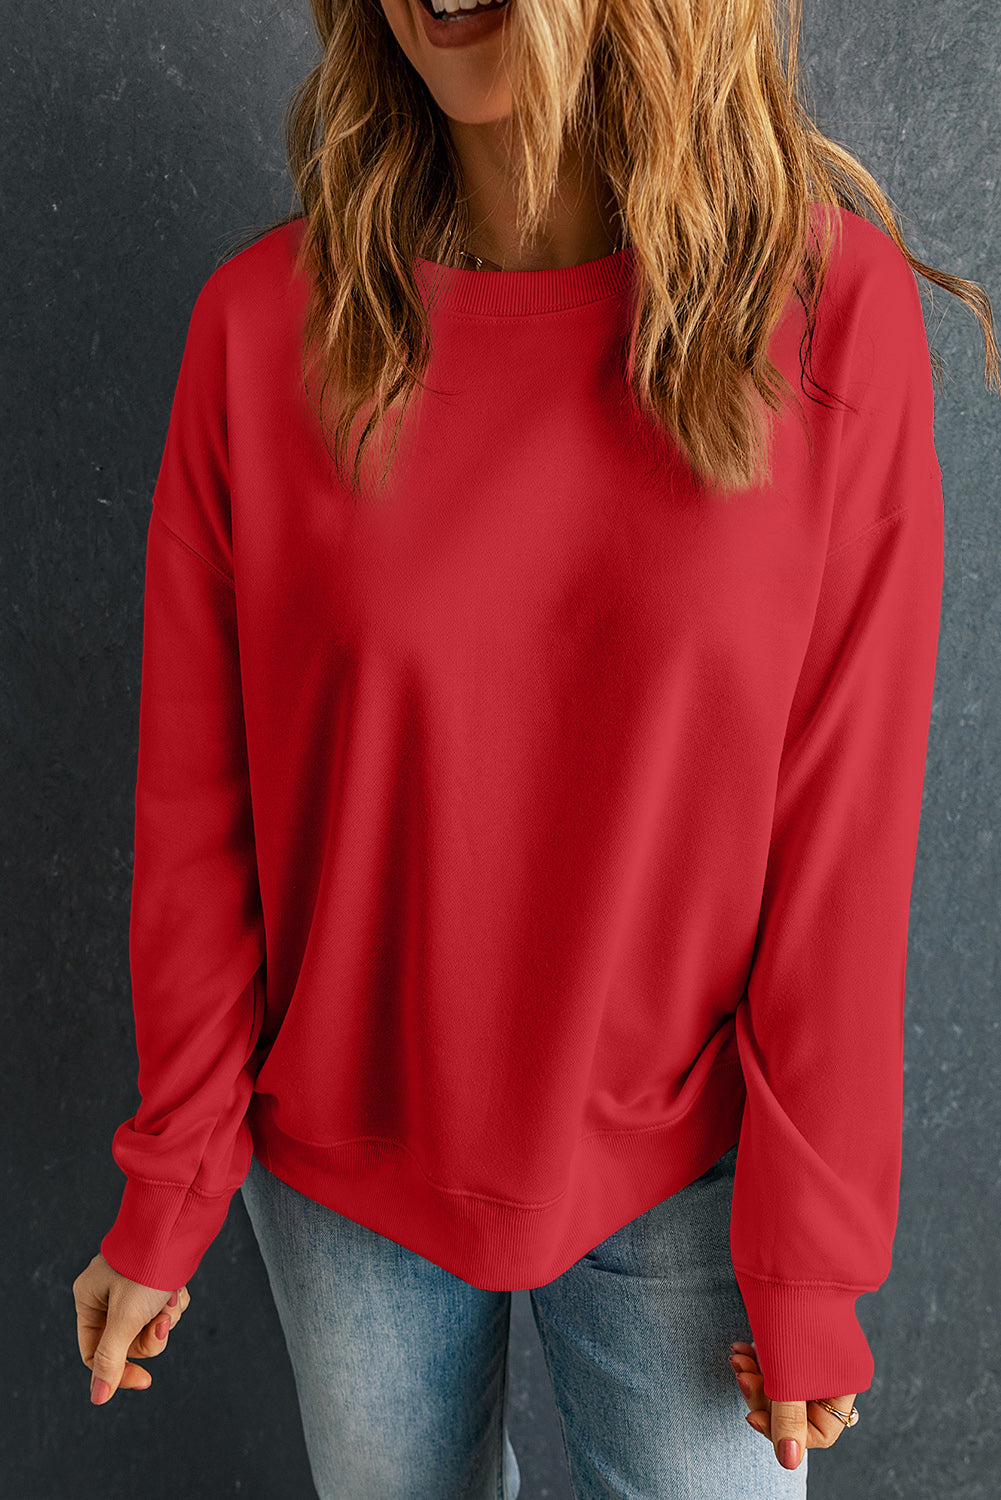 Beigefarbenes, einfarbiges, klassisches Pullover-Sweatshirt mit Rundhalsausschnitt